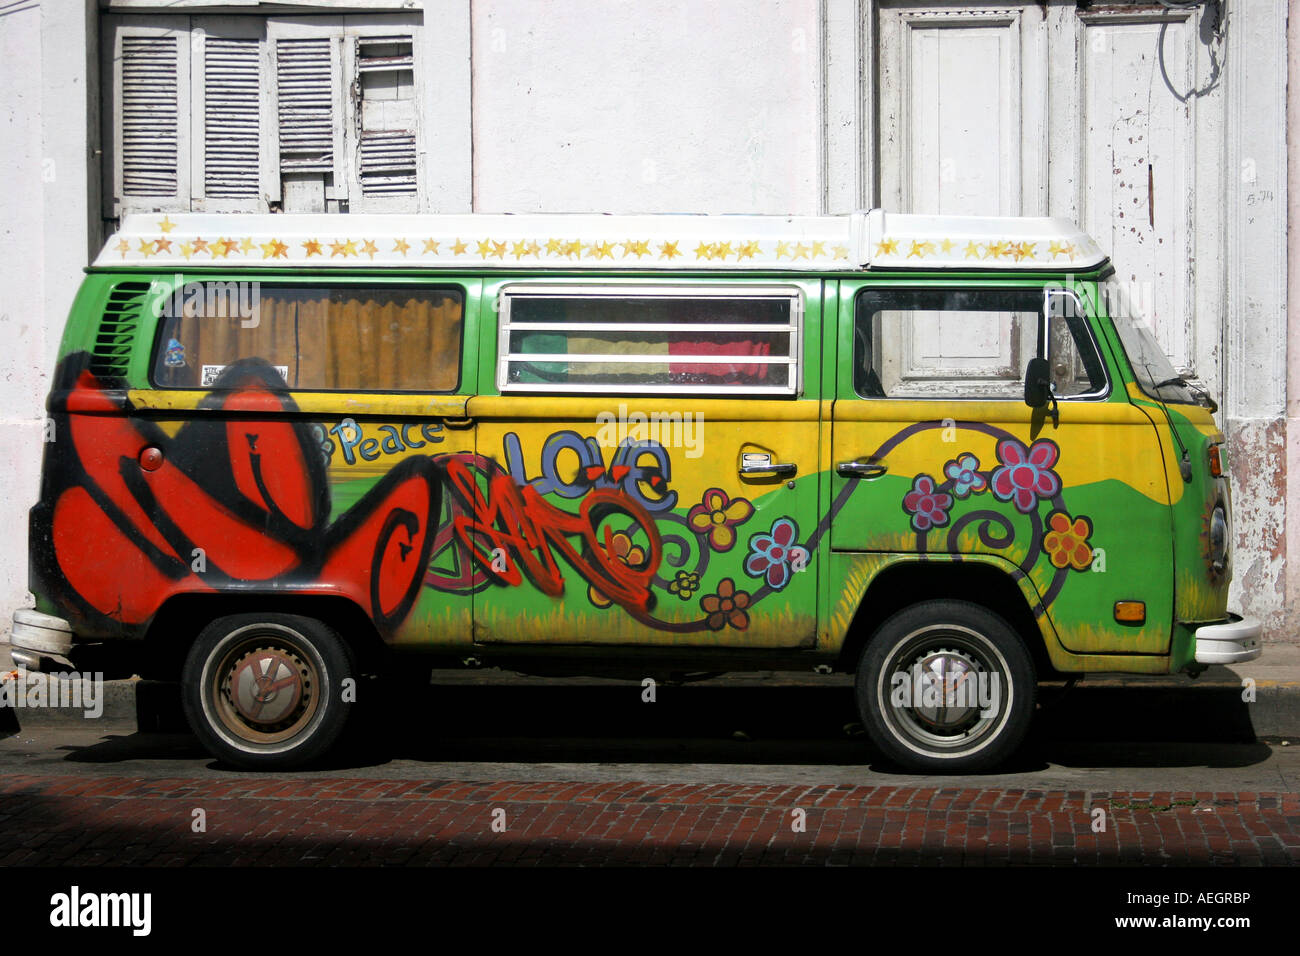 Esta es una vista común en la zona, un colorido, colorido, minivan, trolebús, artísticamente pintados por su propietario. Foto de stock